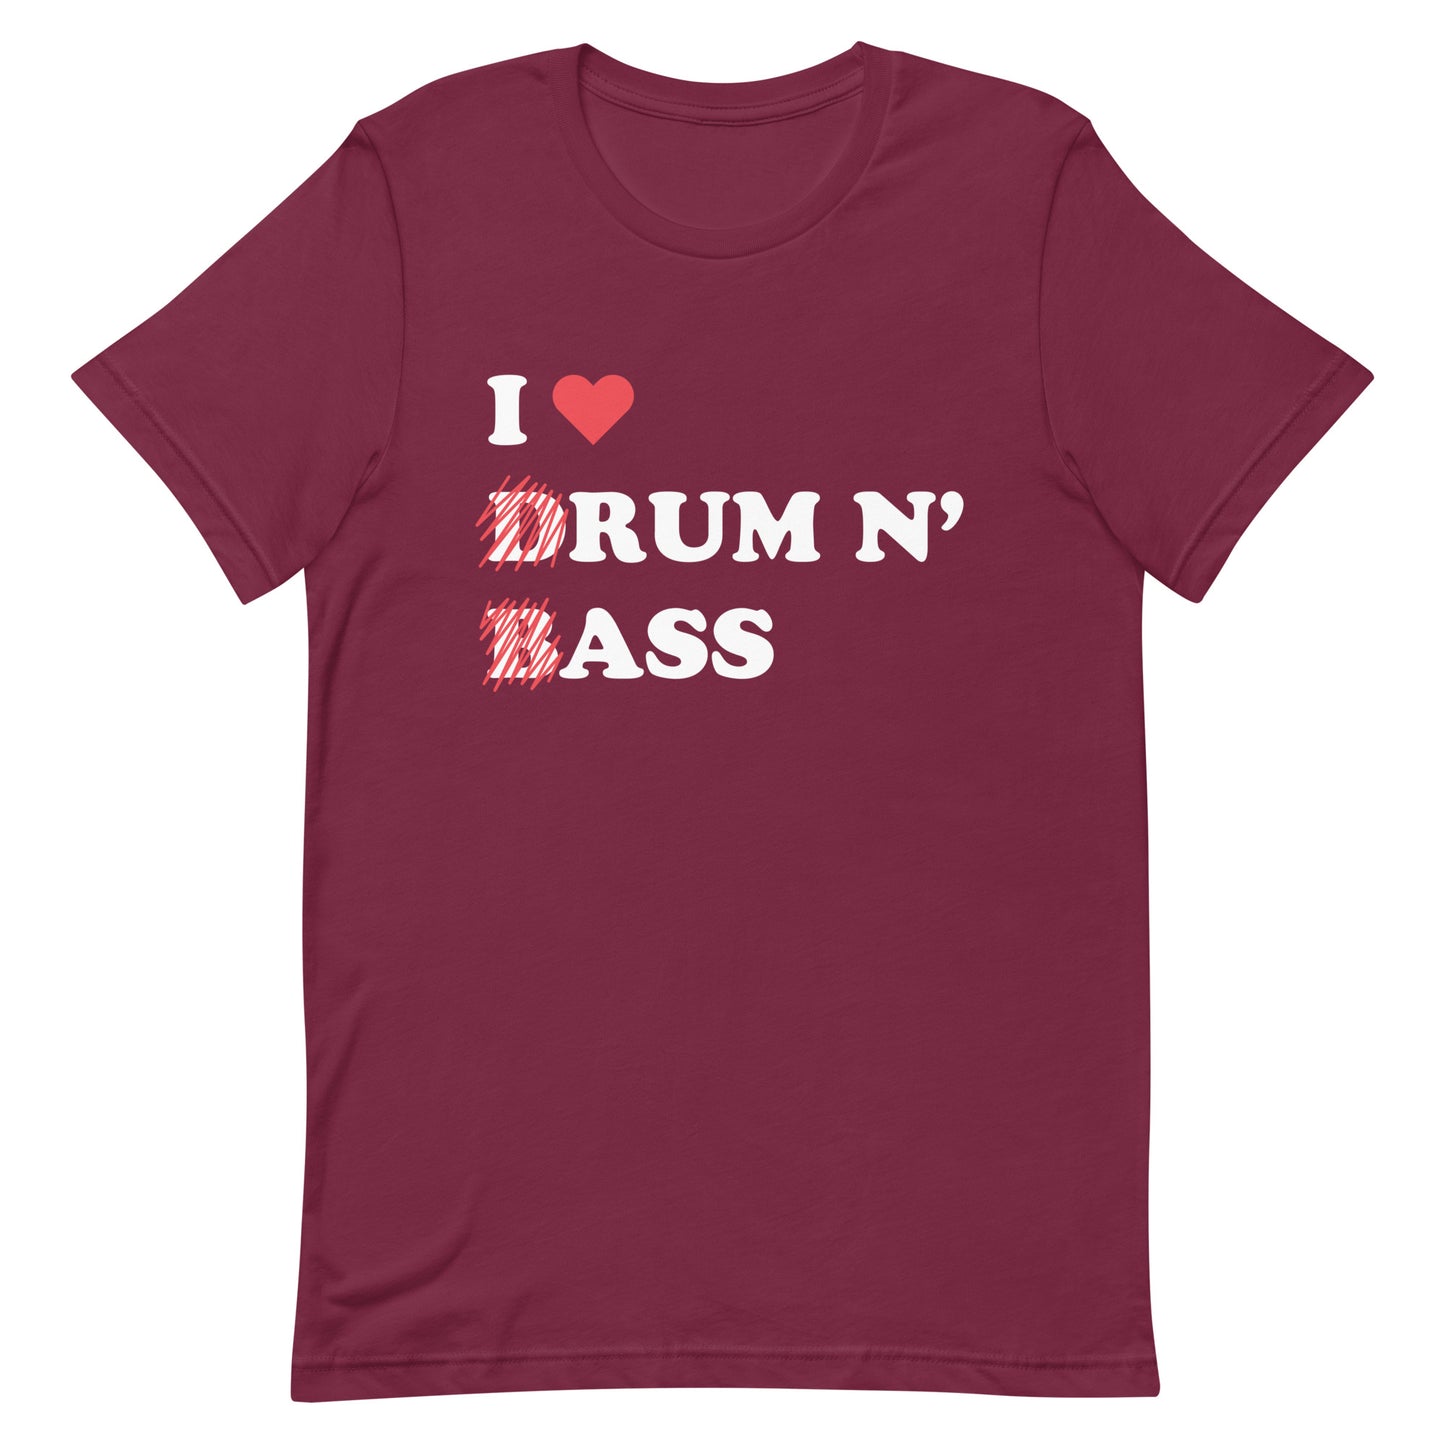 I Heart Drum & Bass Unisex t-shirt